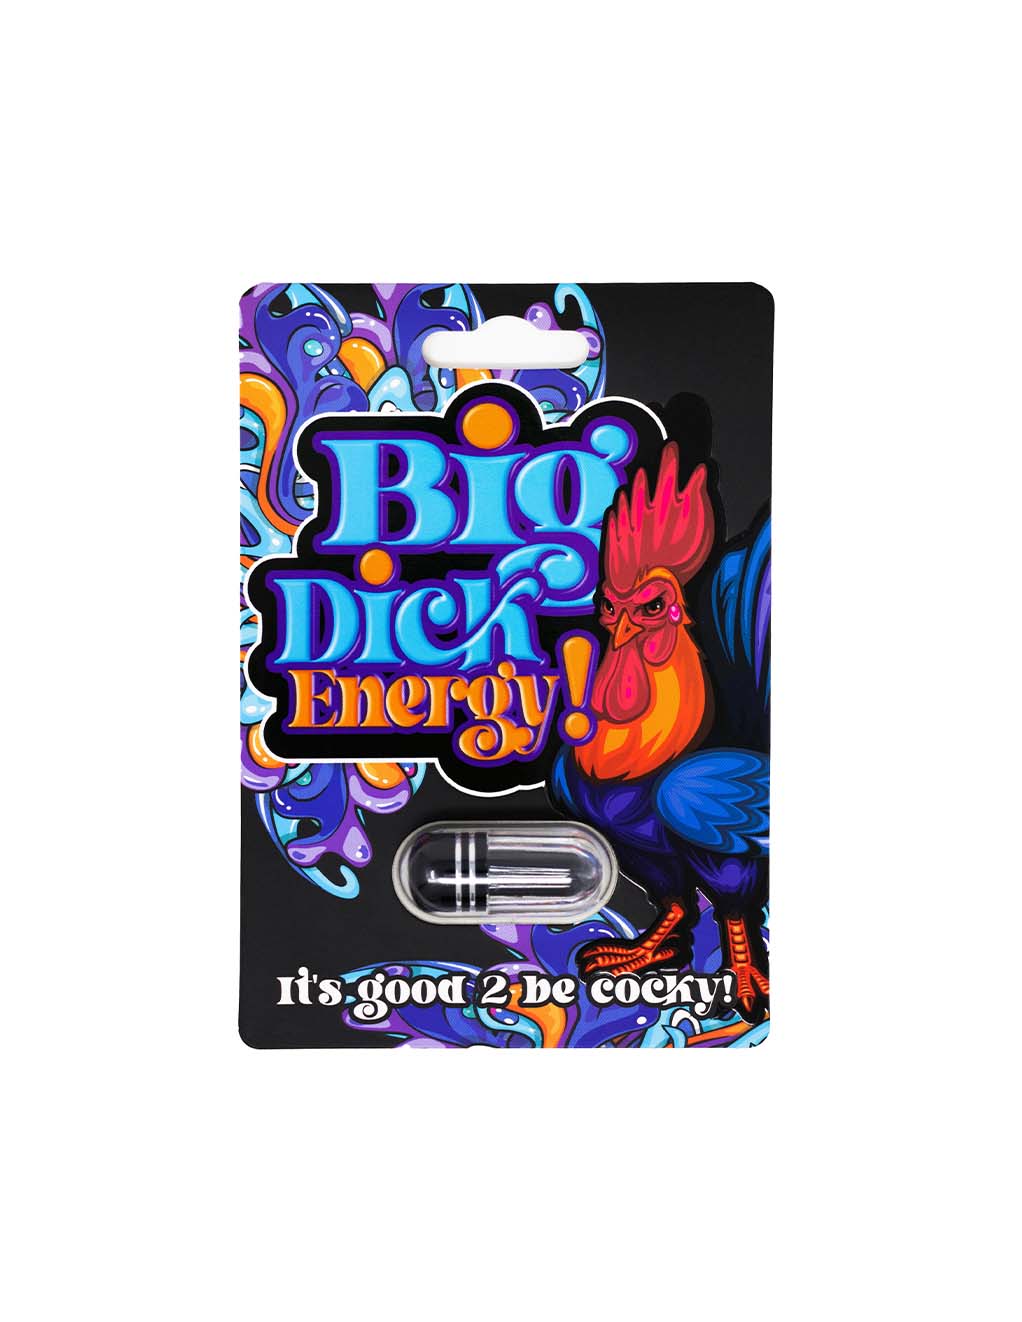 Big Dick Energy Men's Supplement- Front